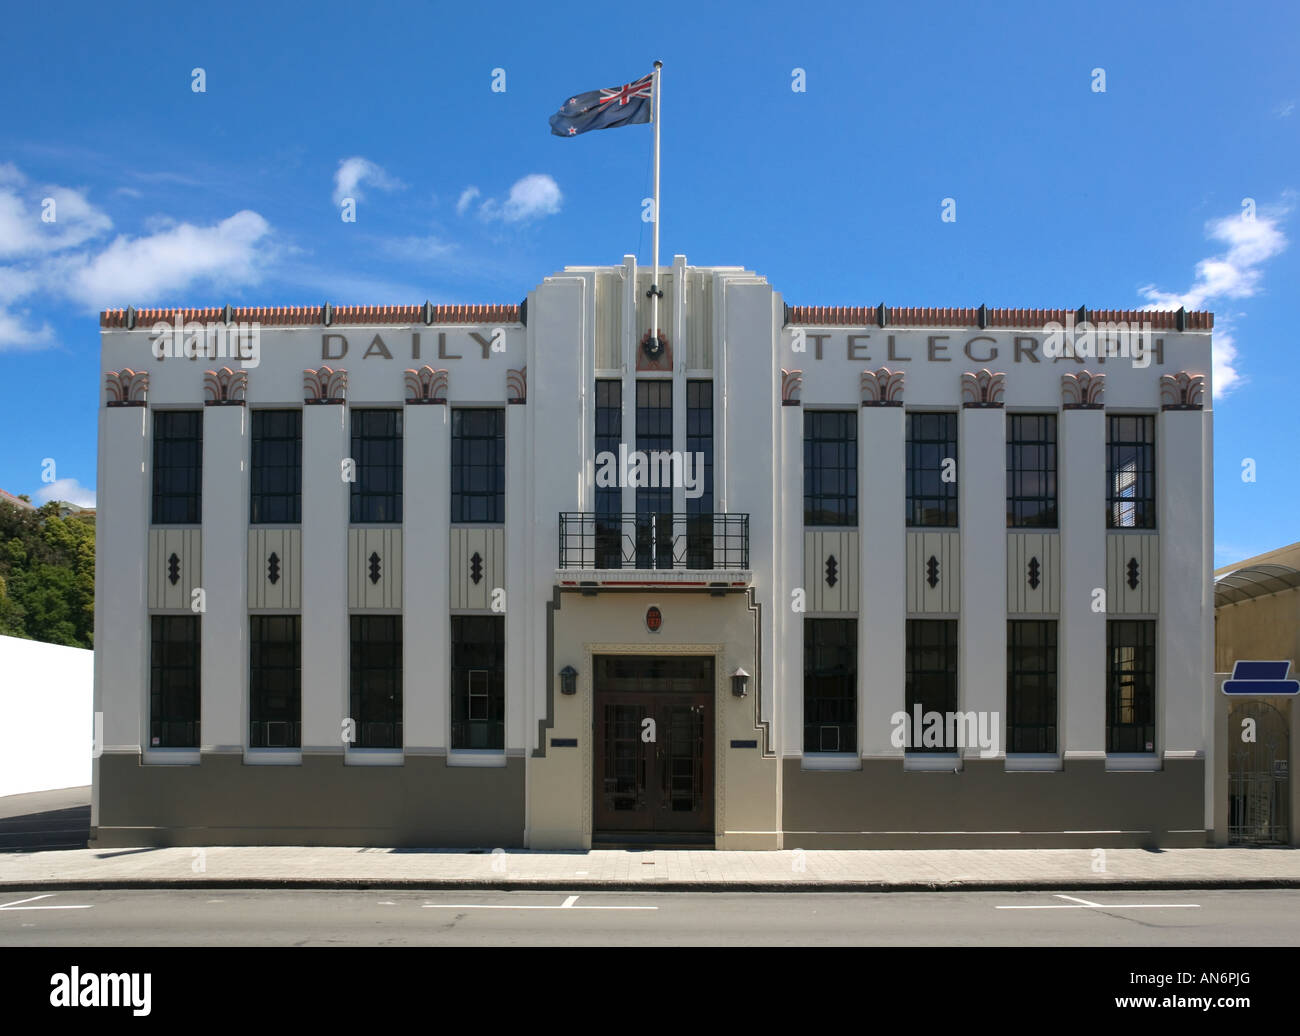 Le Daily Telegraph Building dans le style Art Déco, Napier, Nouvelle-Zélande Banque D'Images